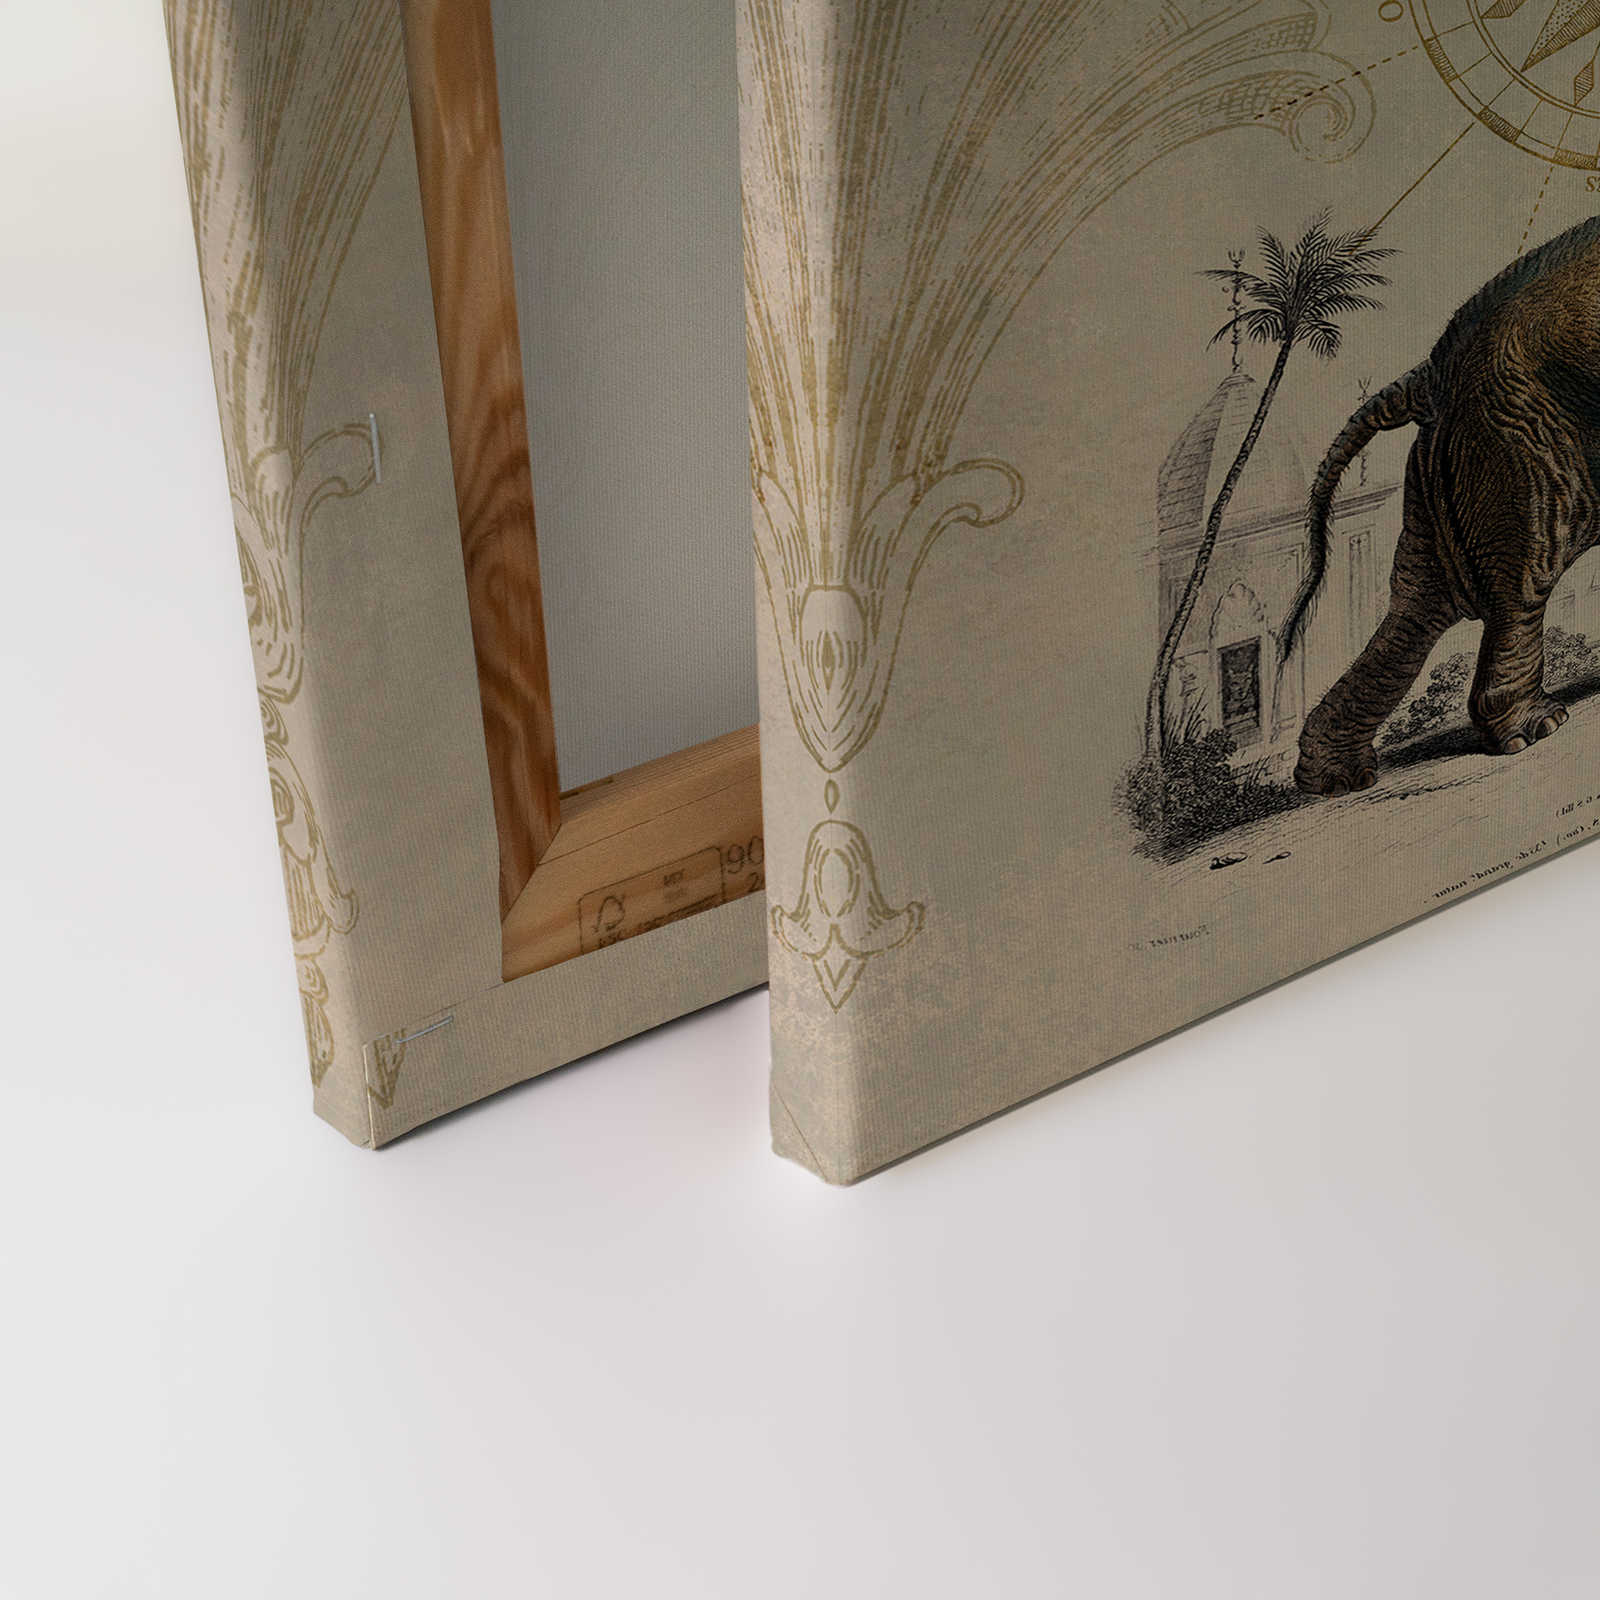             Toile nostalgique avec motif d'éléphant vintage - 1,20 m x 0,80 m
        